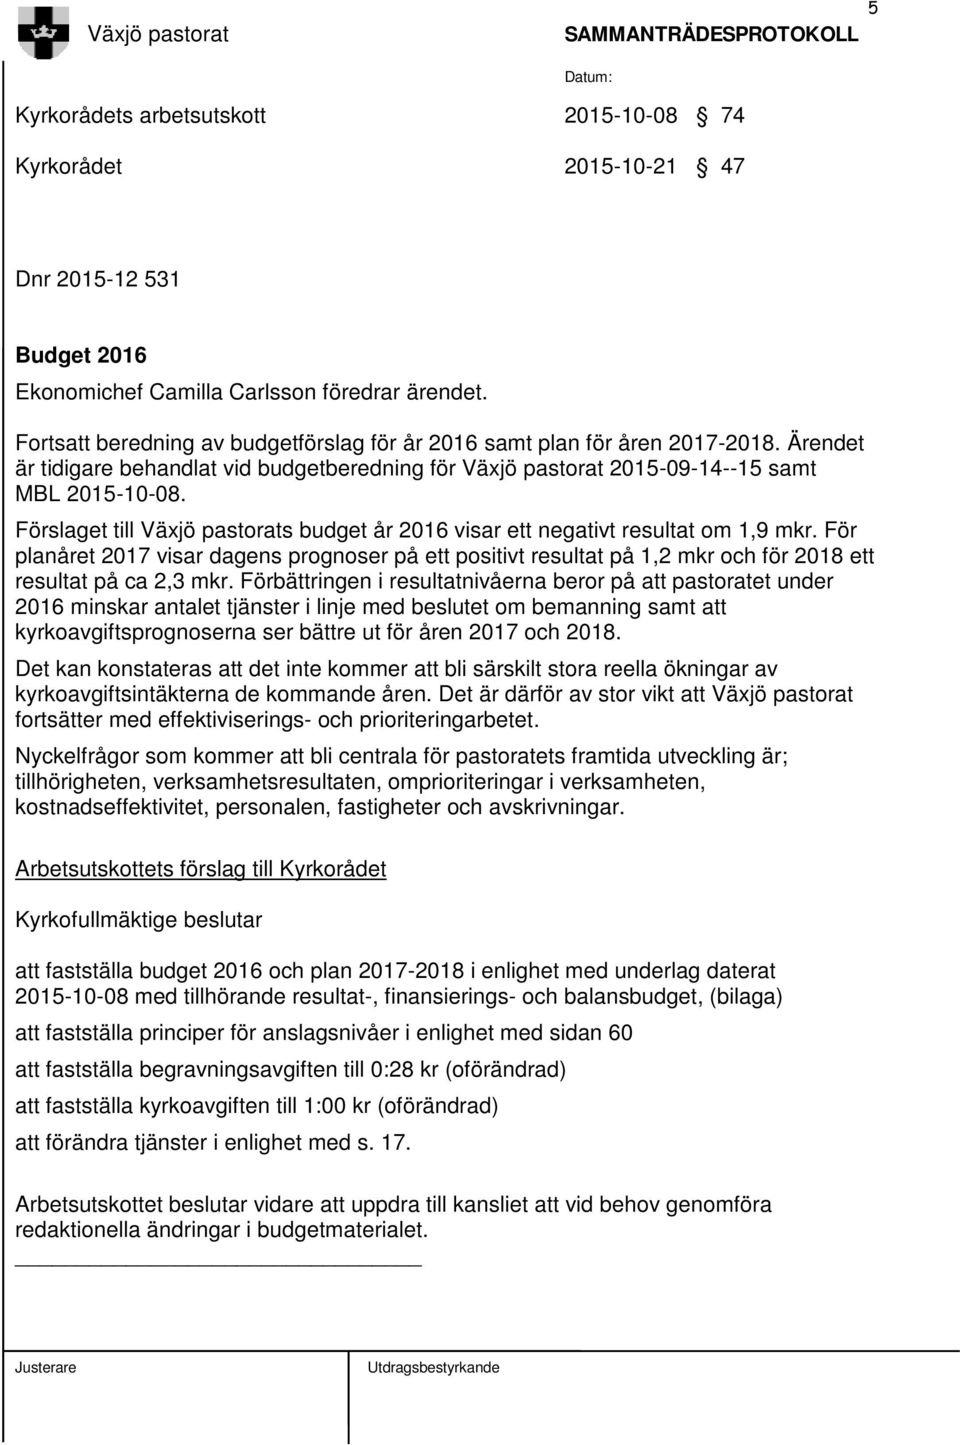 Förslaget till Växjö pastorats budget år 2016 visar ett negativt resultat om 1,9 mkr.